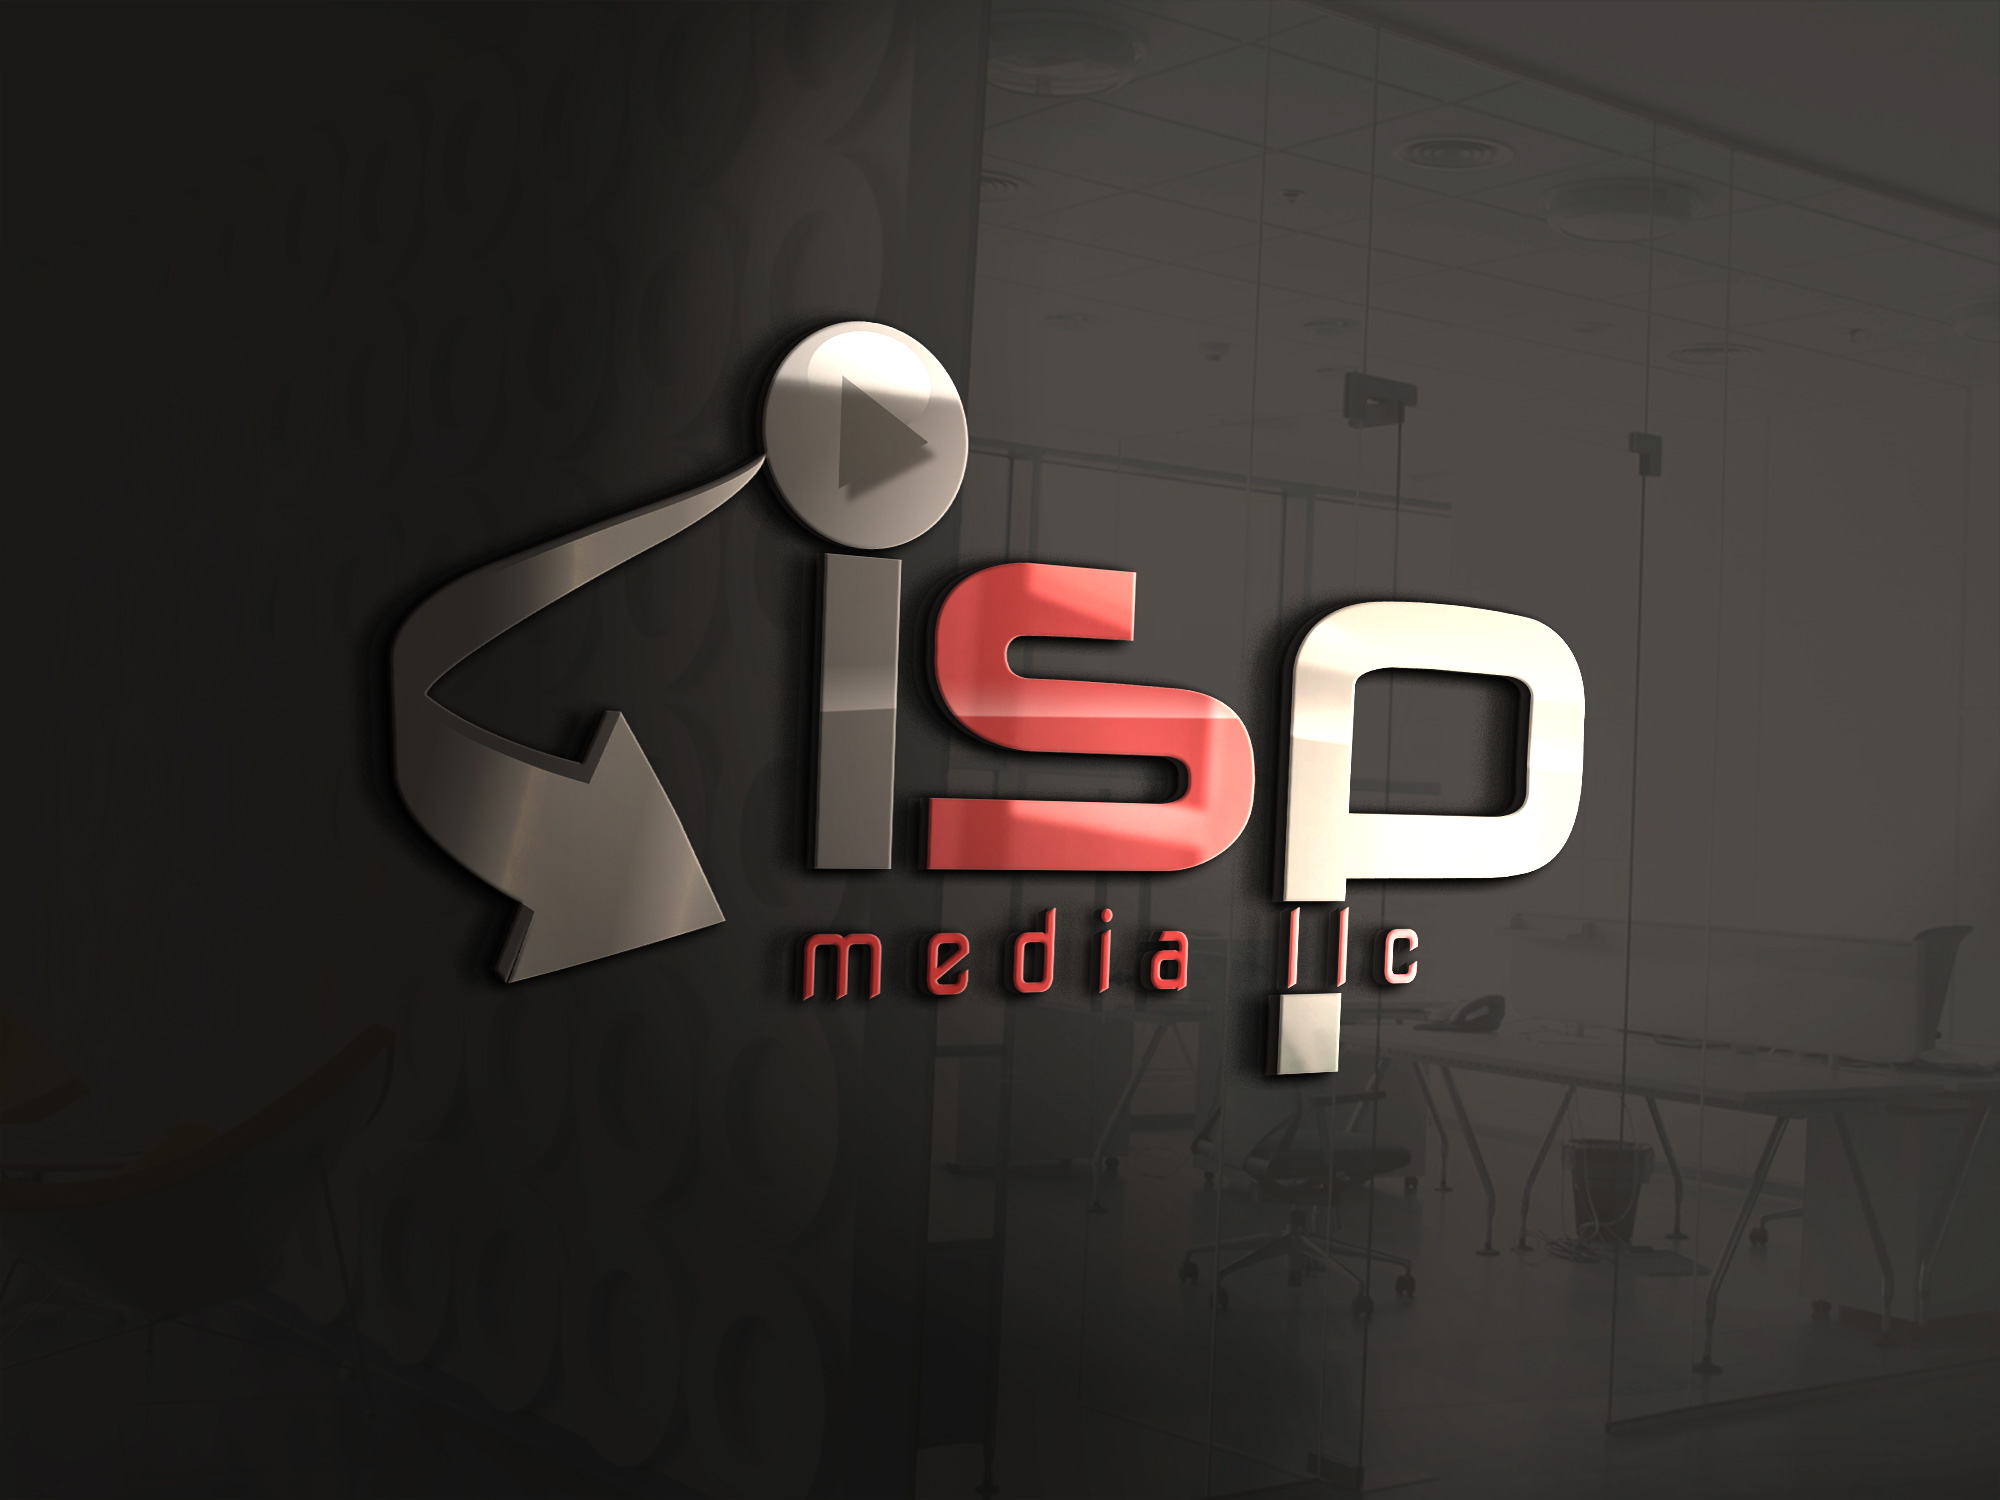 ISP Media LLC